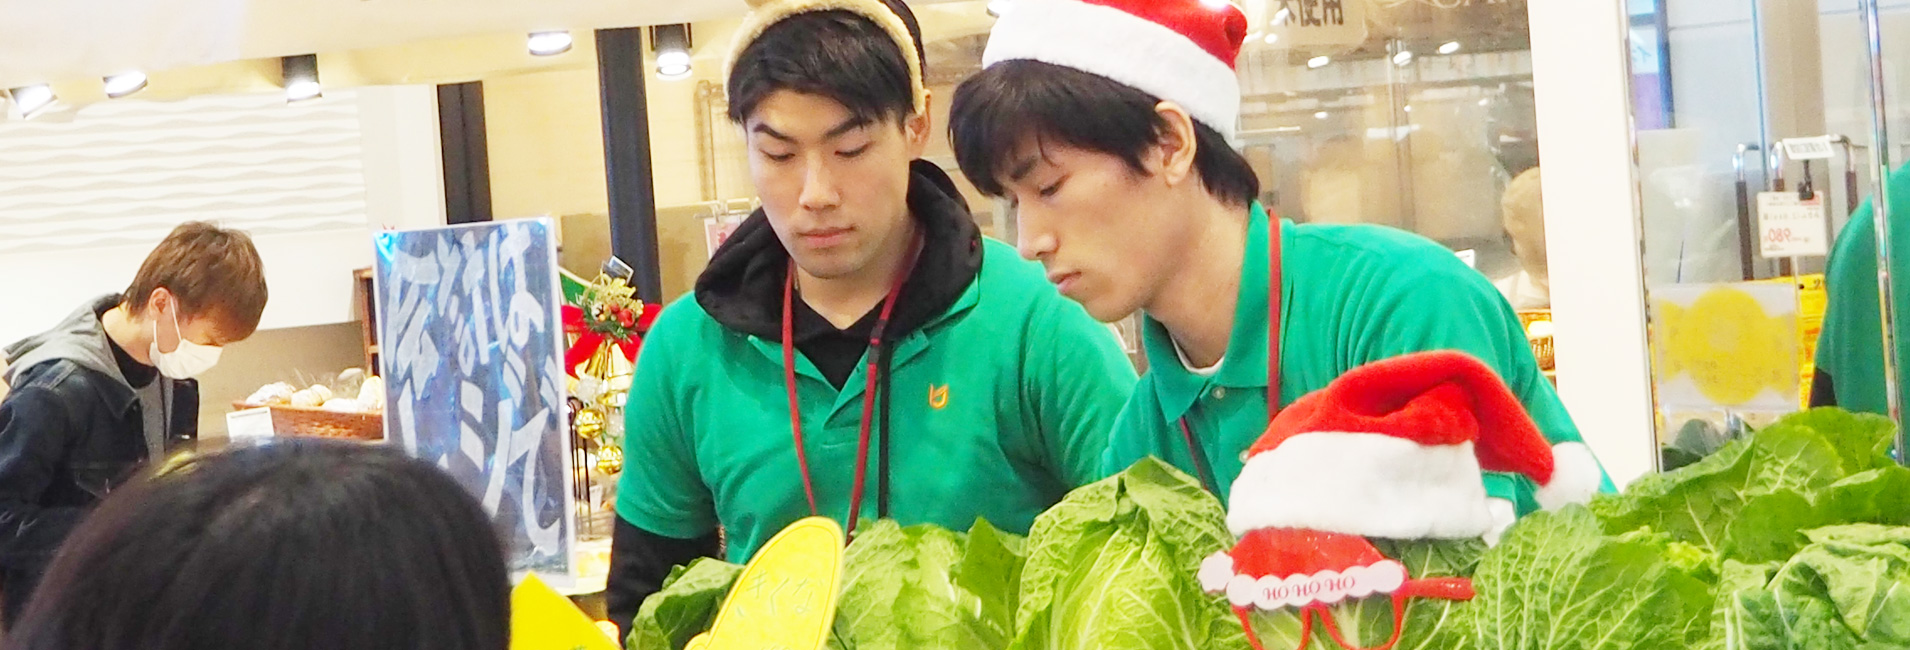 大型スーパーでの地場野菜の販売活動 ―クリスマスバージョン―